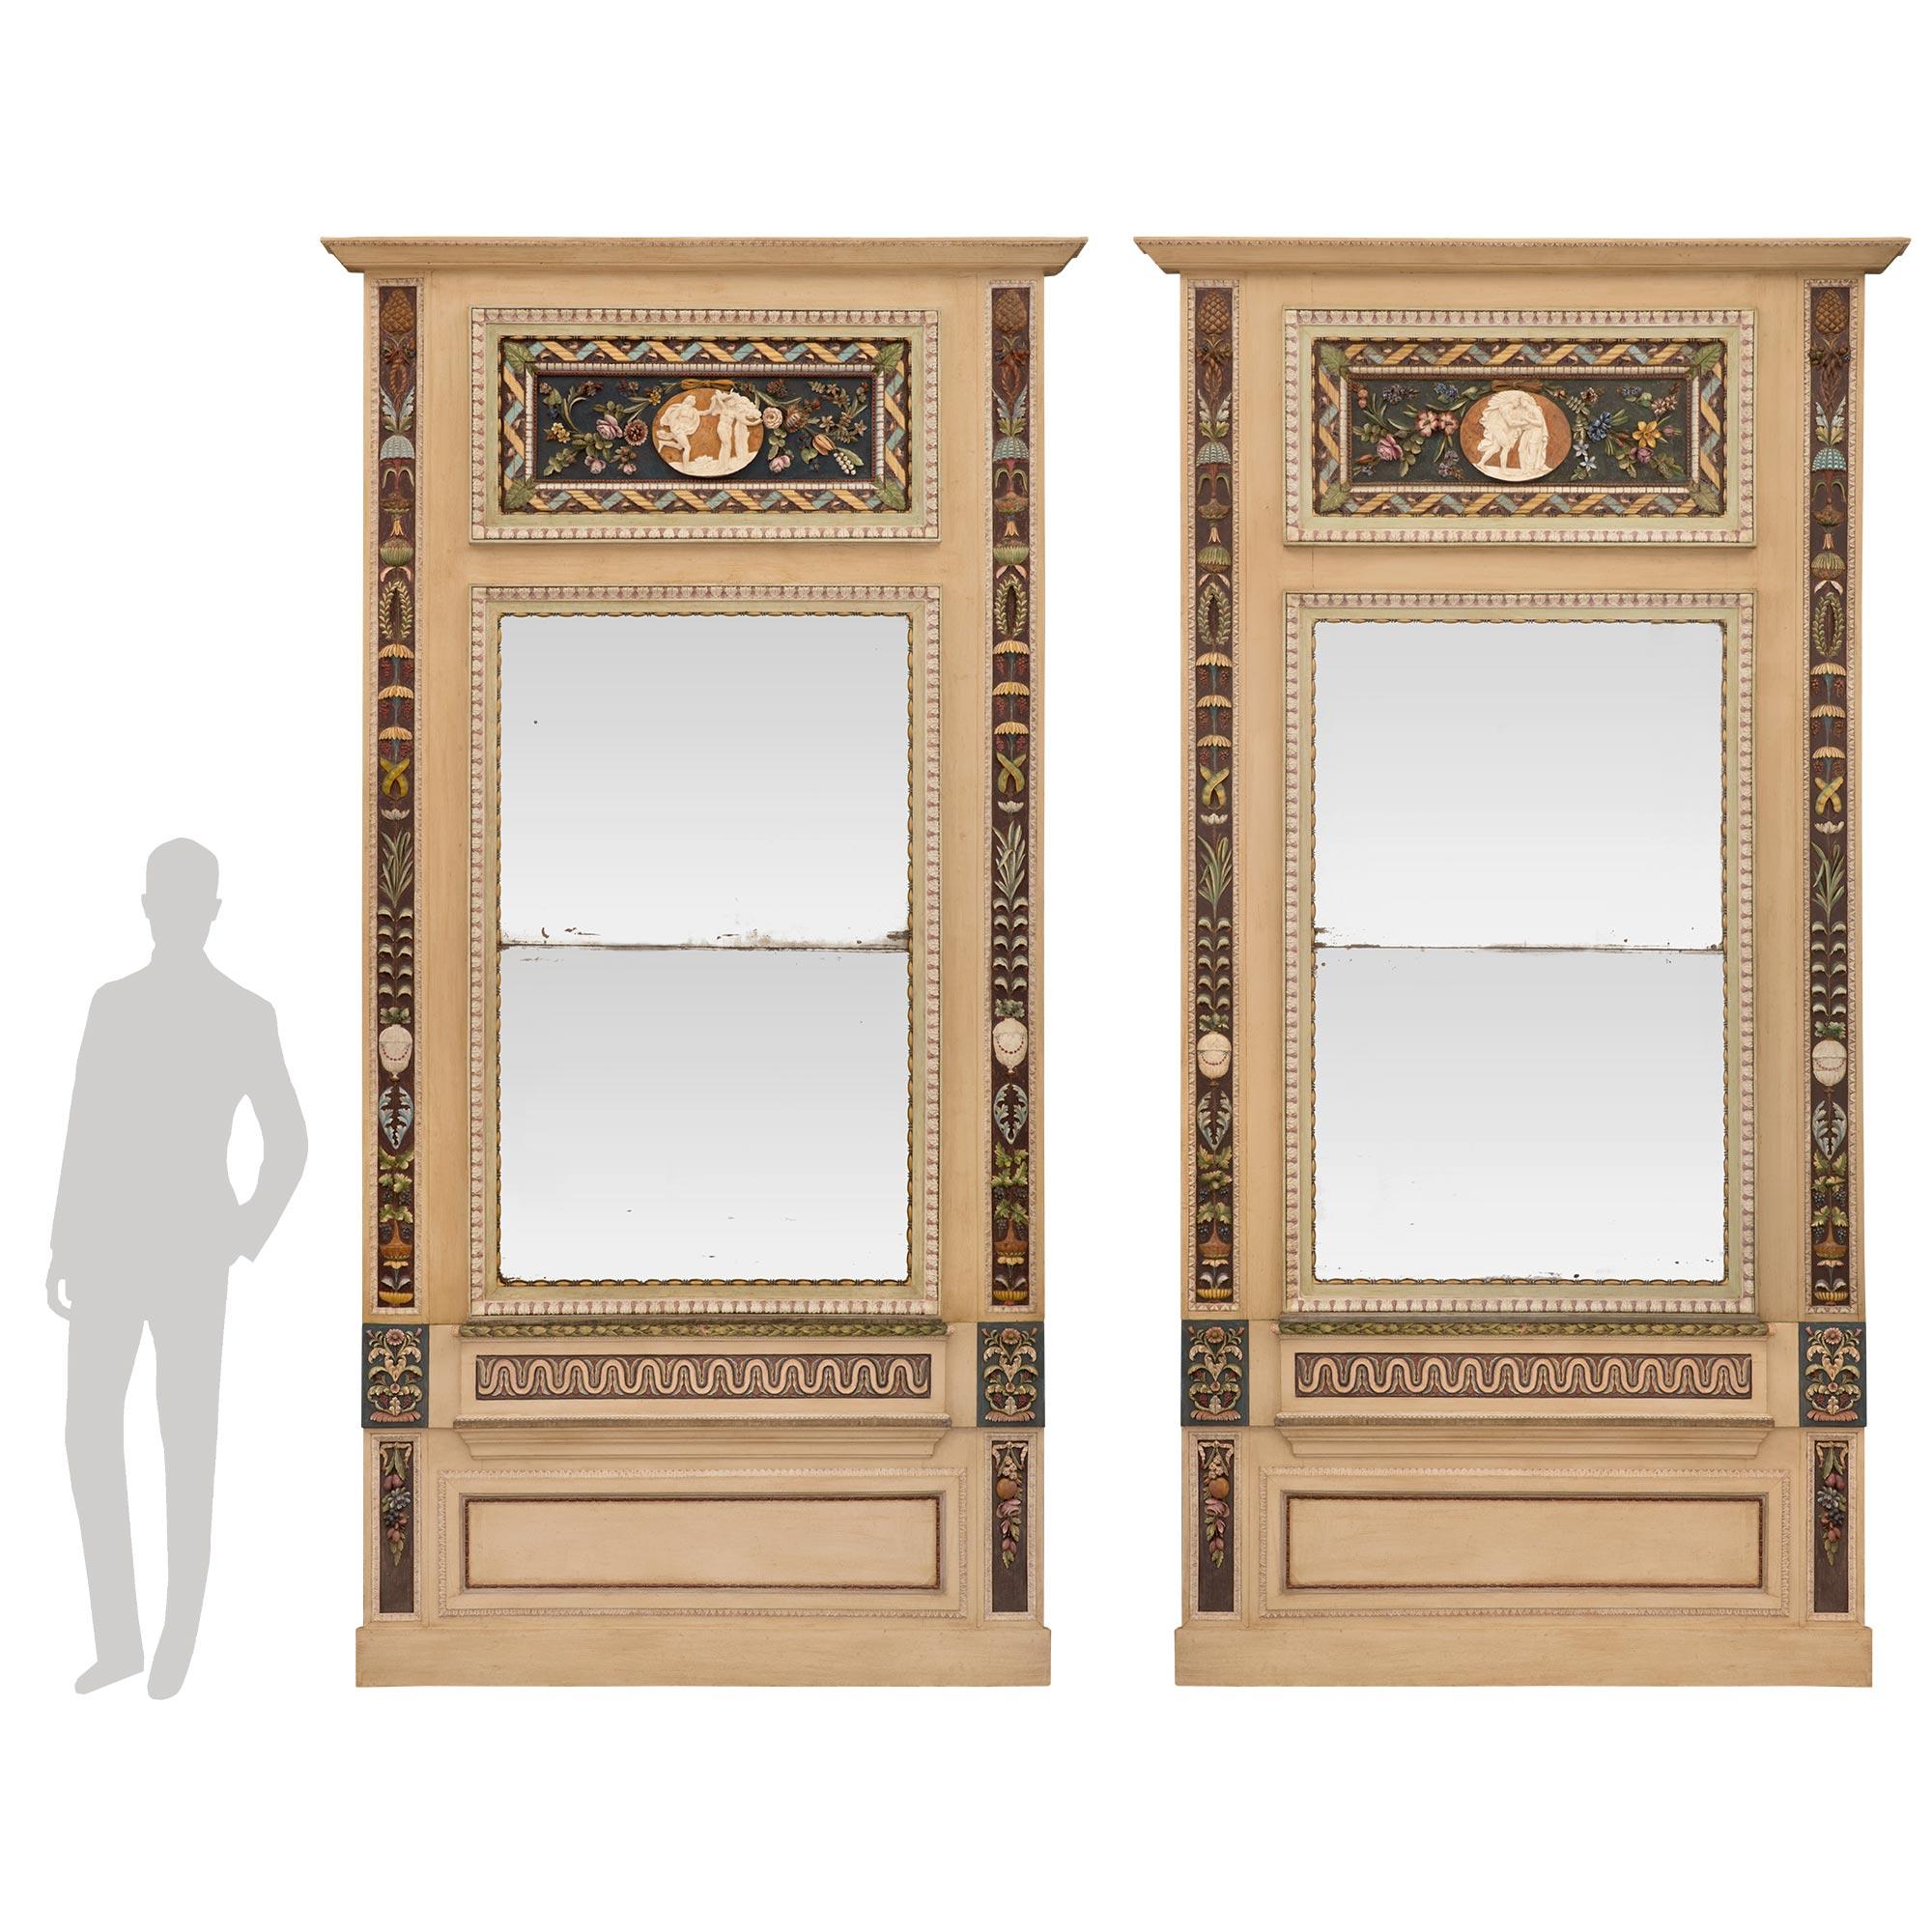 Ein atemberaubendes und äußerst dekoratives, großformatiges Paar italienischer neoklassizistischer Trumeau-Spiegel aus patiniertem Holz des frühen 19. Jahrhunderts. Jeder Spiegel steht auf einem eleganten, gesprenkelten Sockel unter einer vertieften